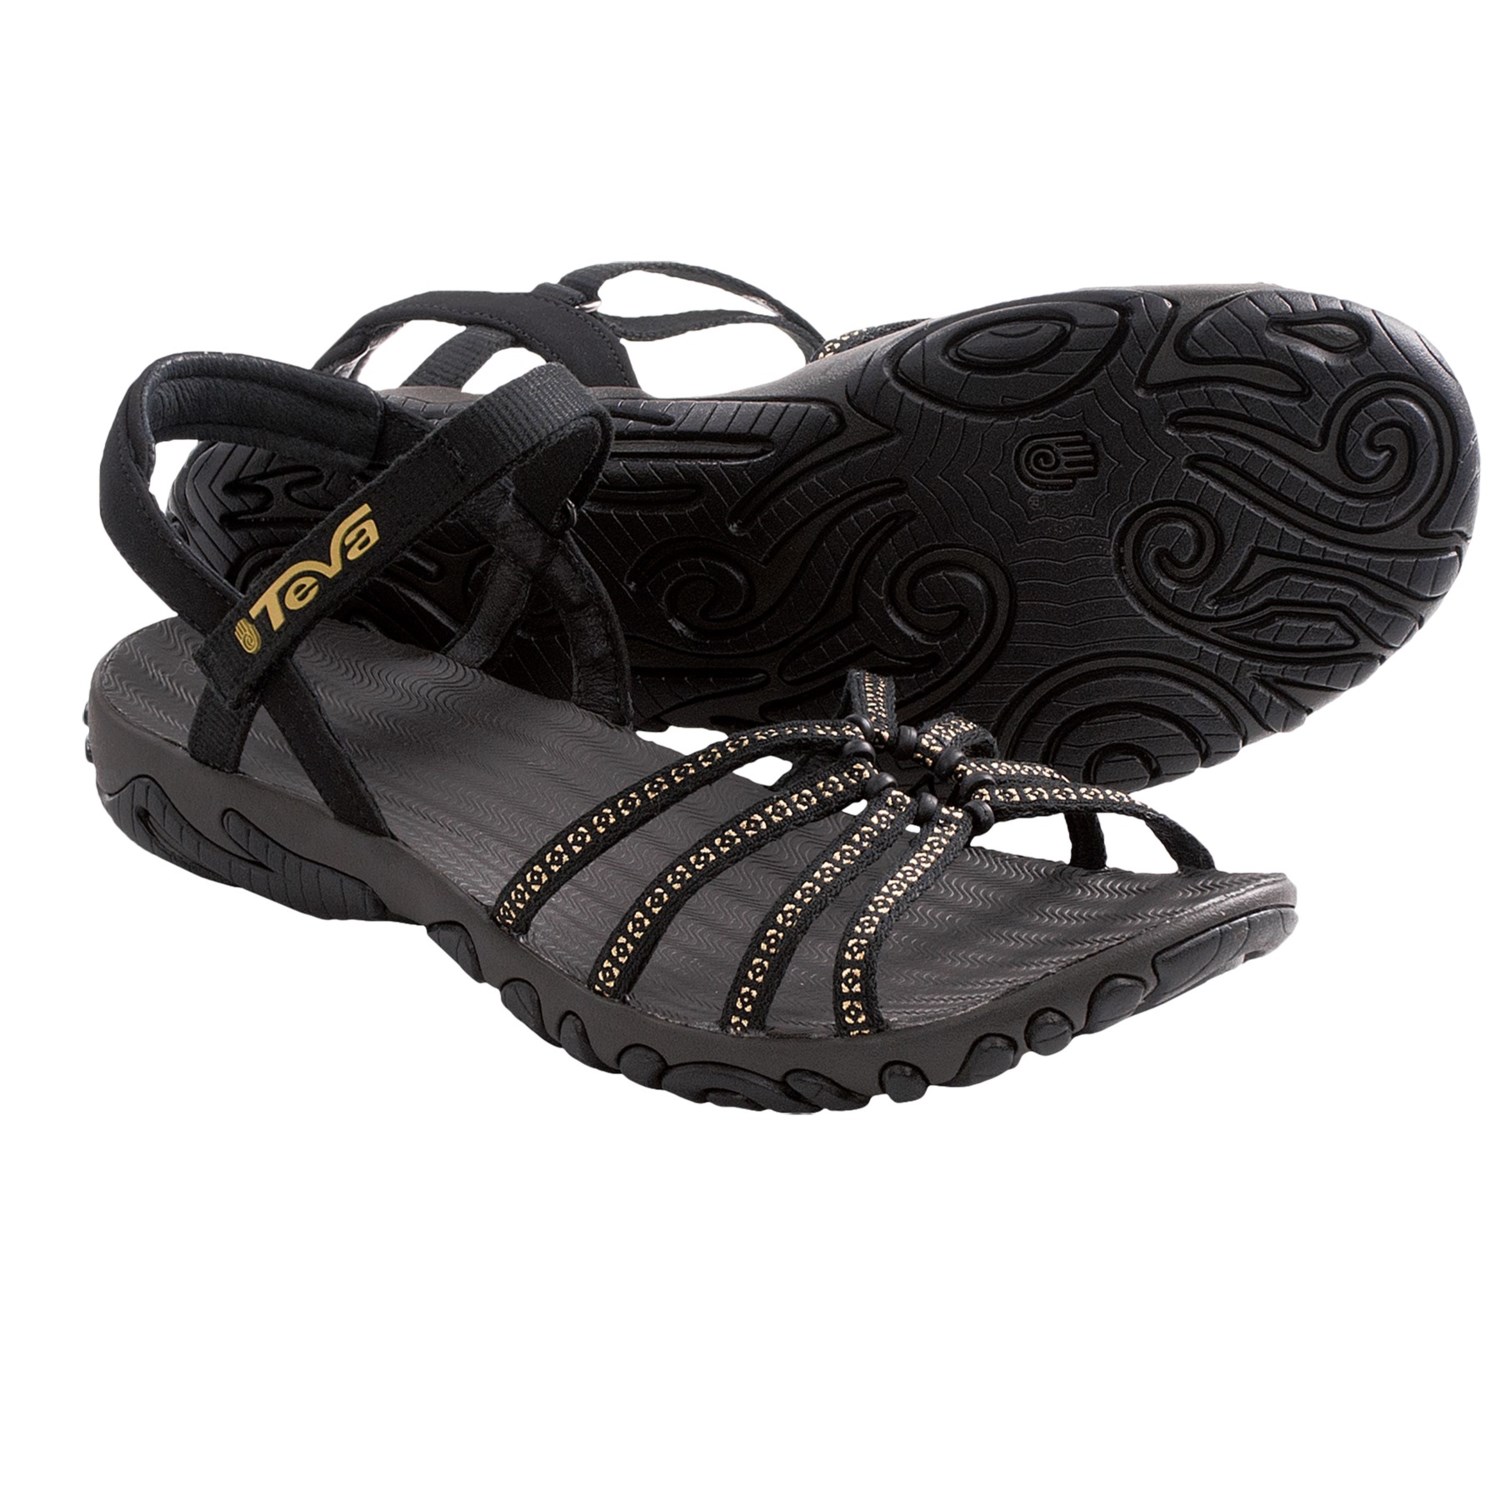 Teva Kayenta Studded Sandals (For Women) in Black